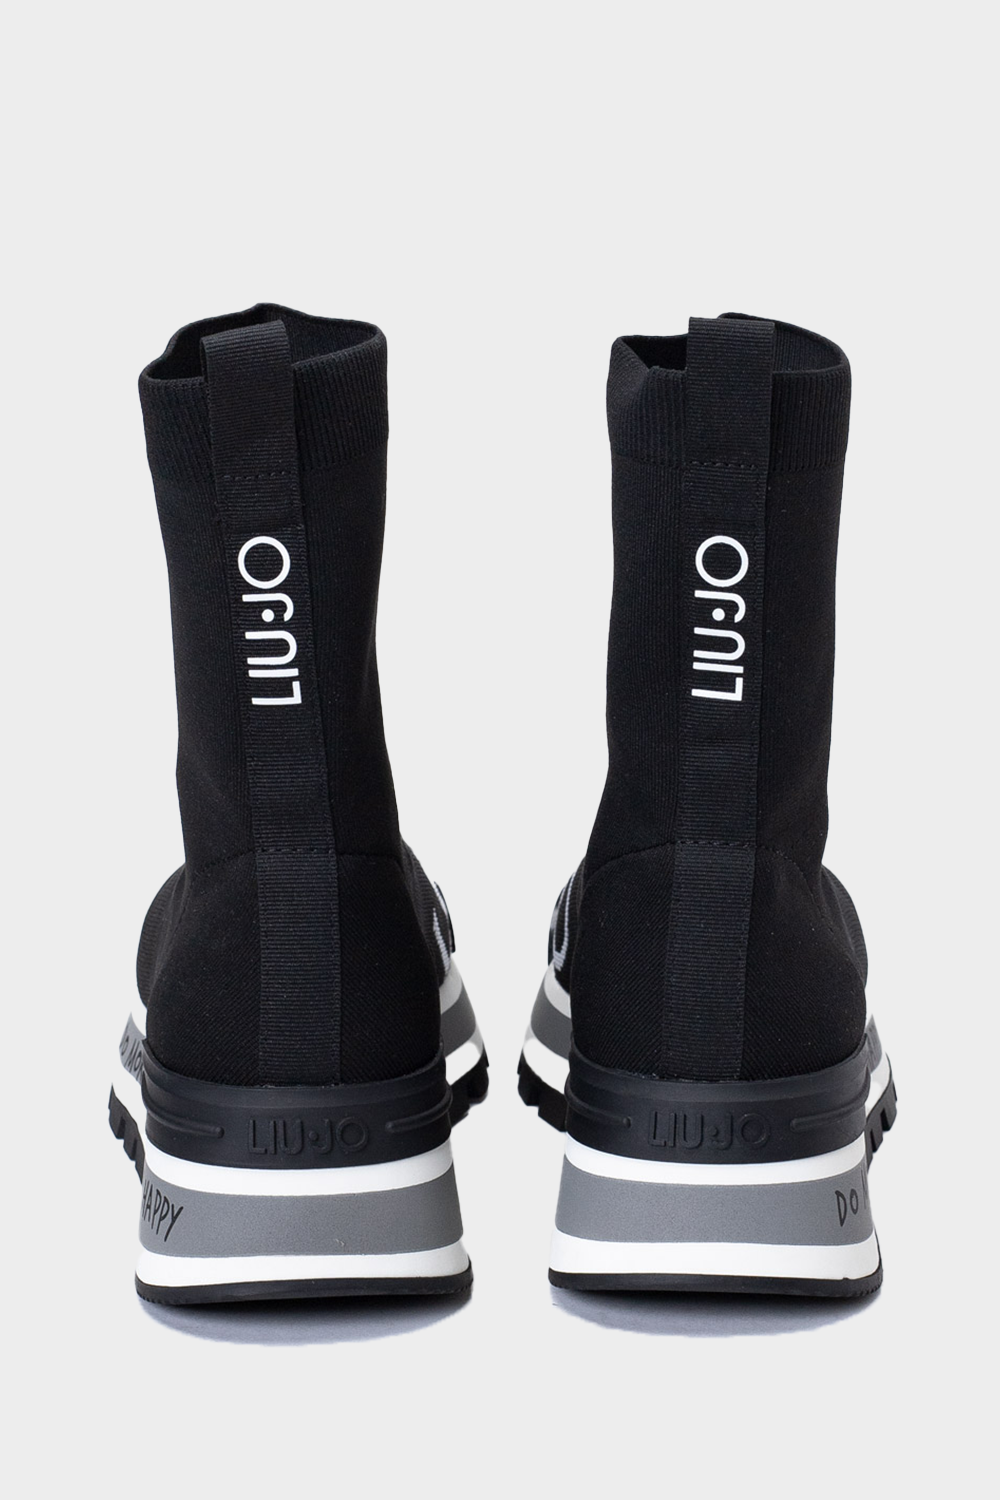 נעלי גרב לנשים בצבע שחור LIU JO Vendome online | ונדום .